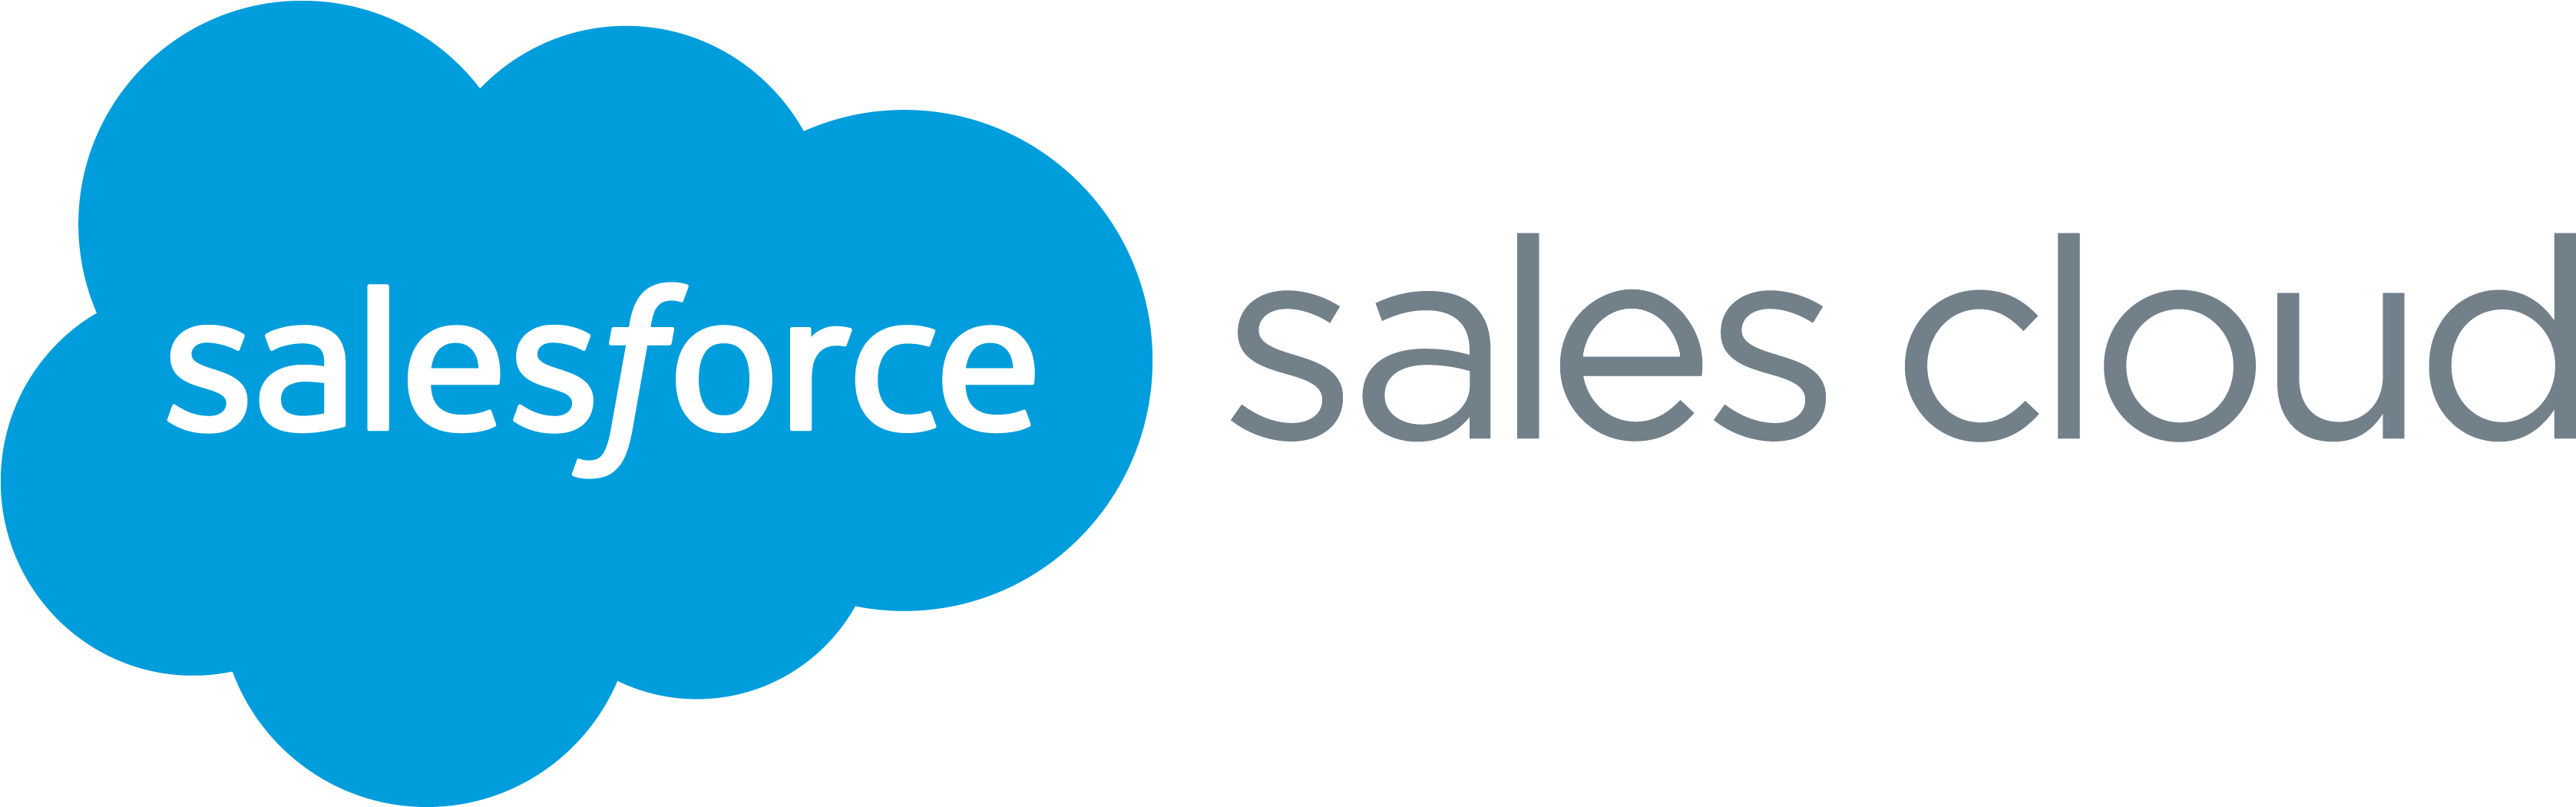 Salesforce Sales Cloud Capture Your Lead Data, Access - Salesforce Commerce Cloud Logo (1962x600), Png Download